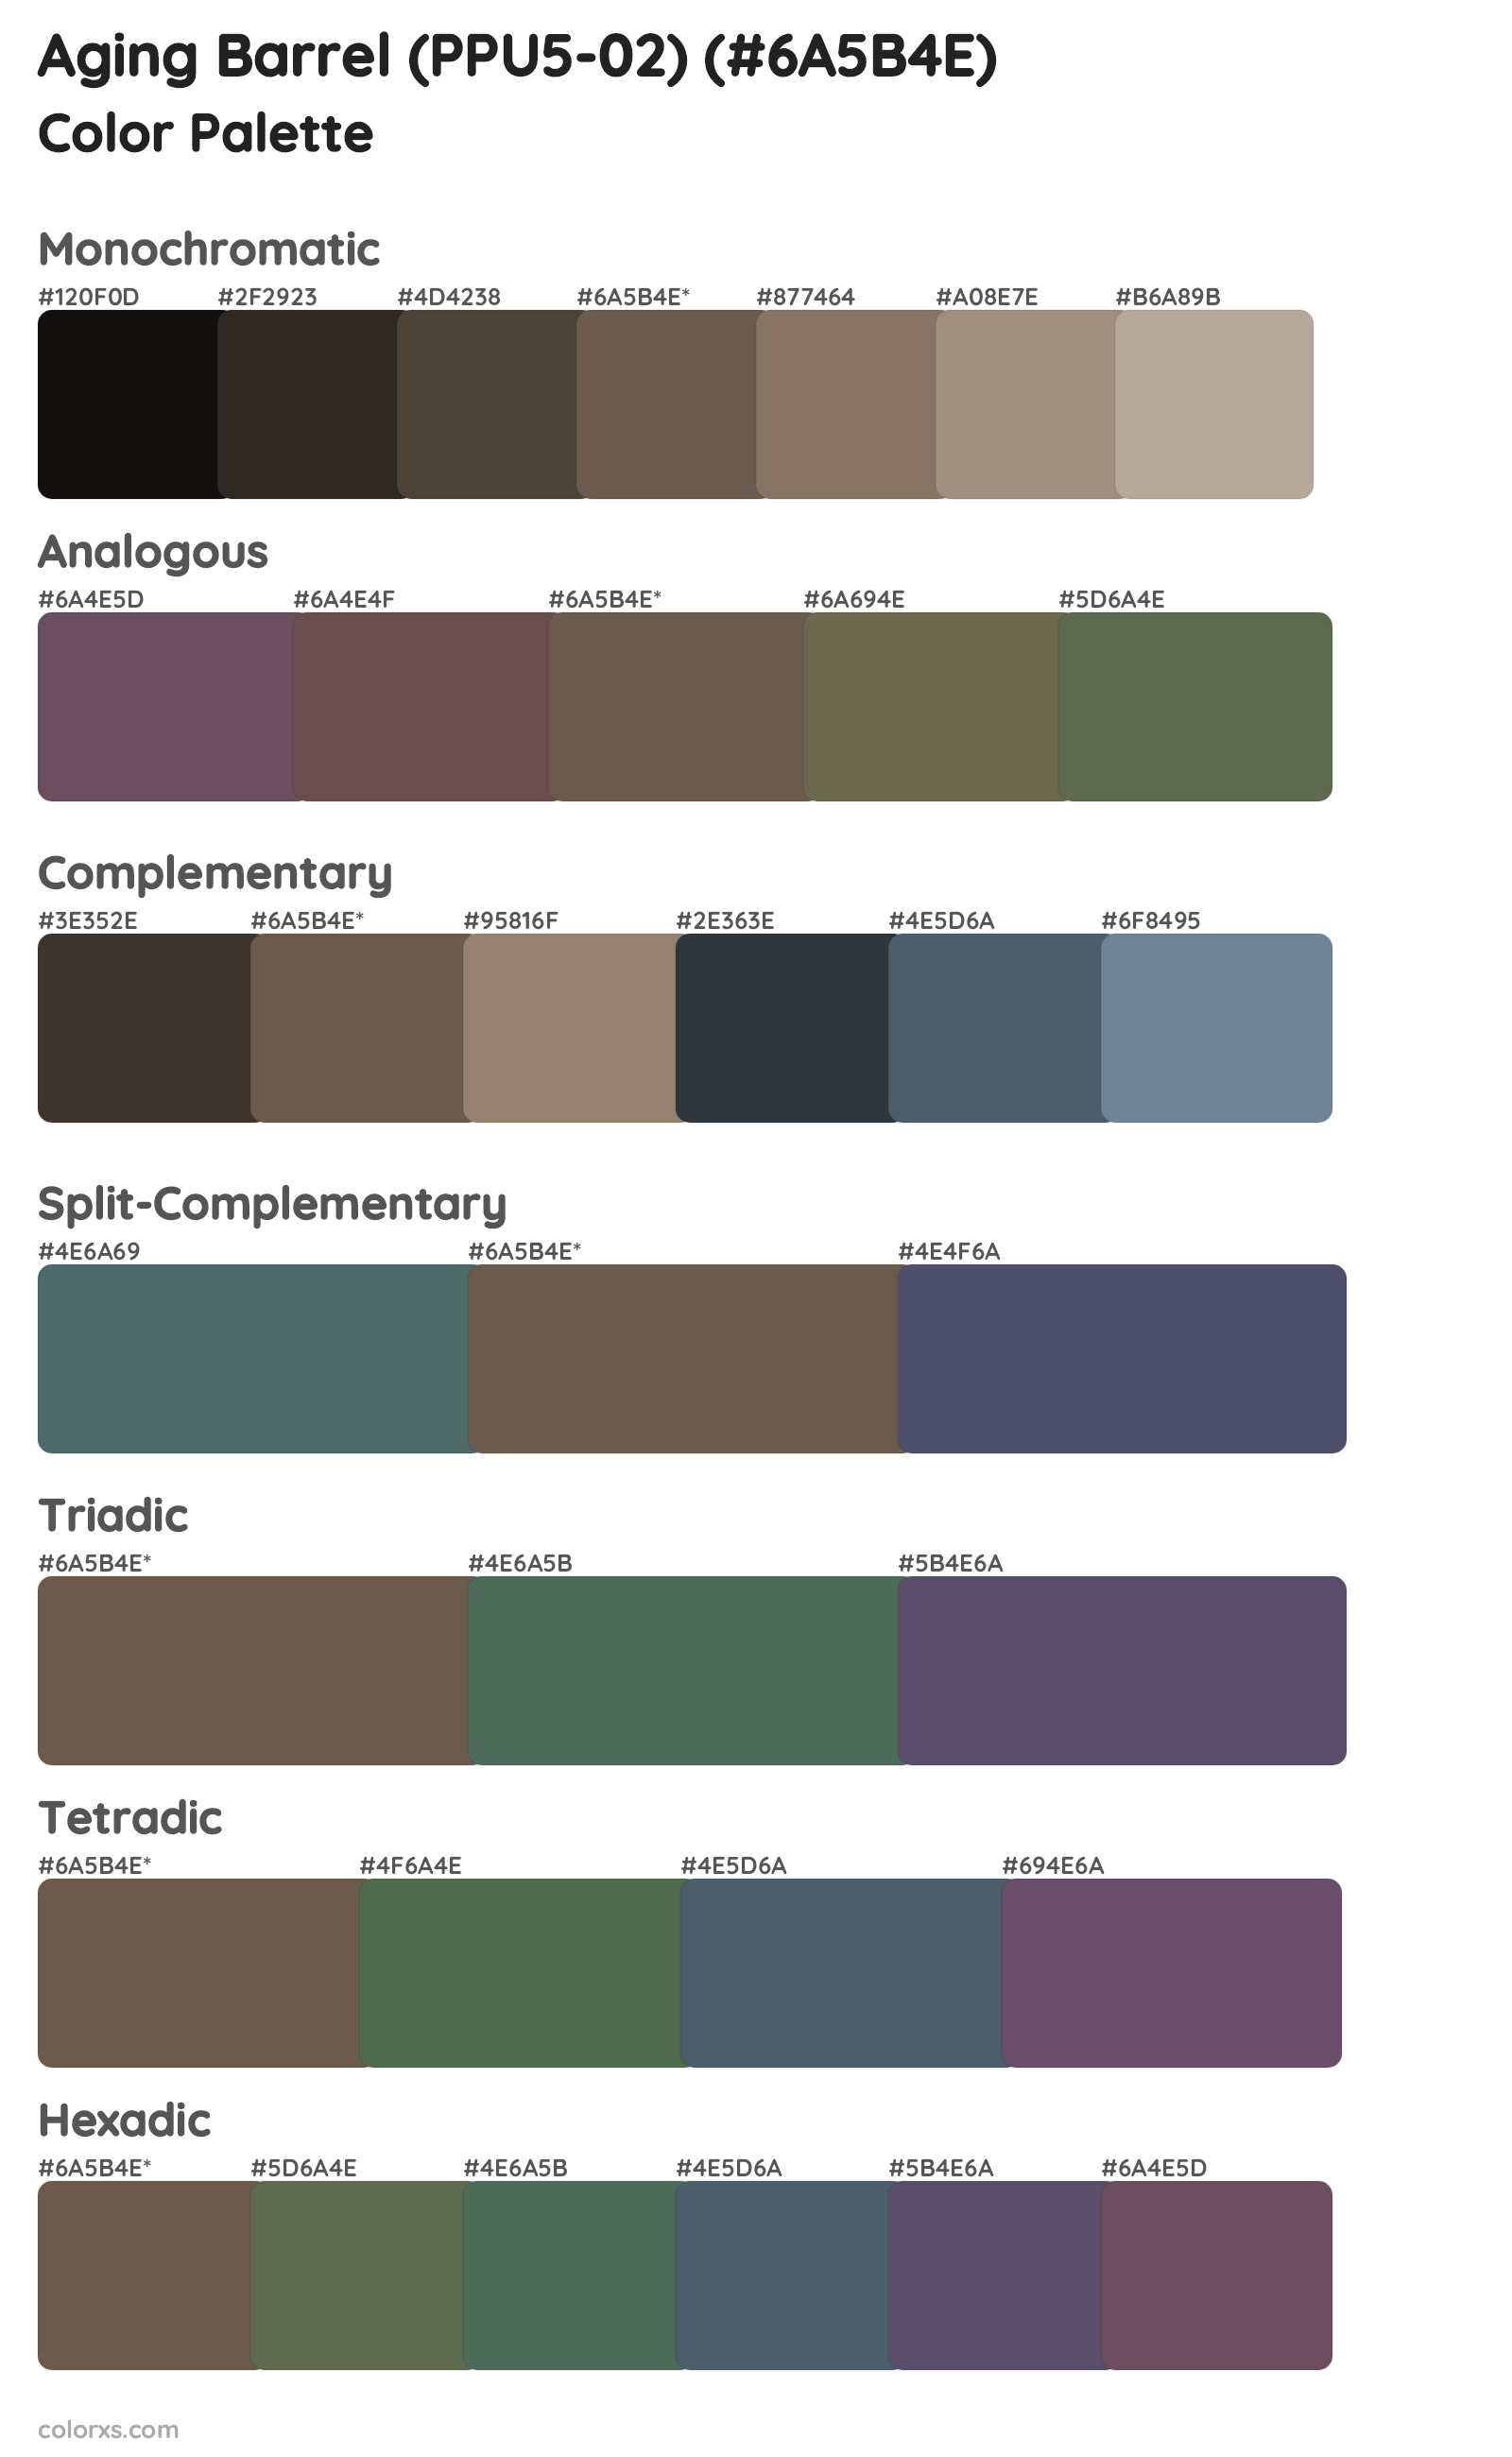 Aging Barrel (PPU5-02) Color Scheme Palettes